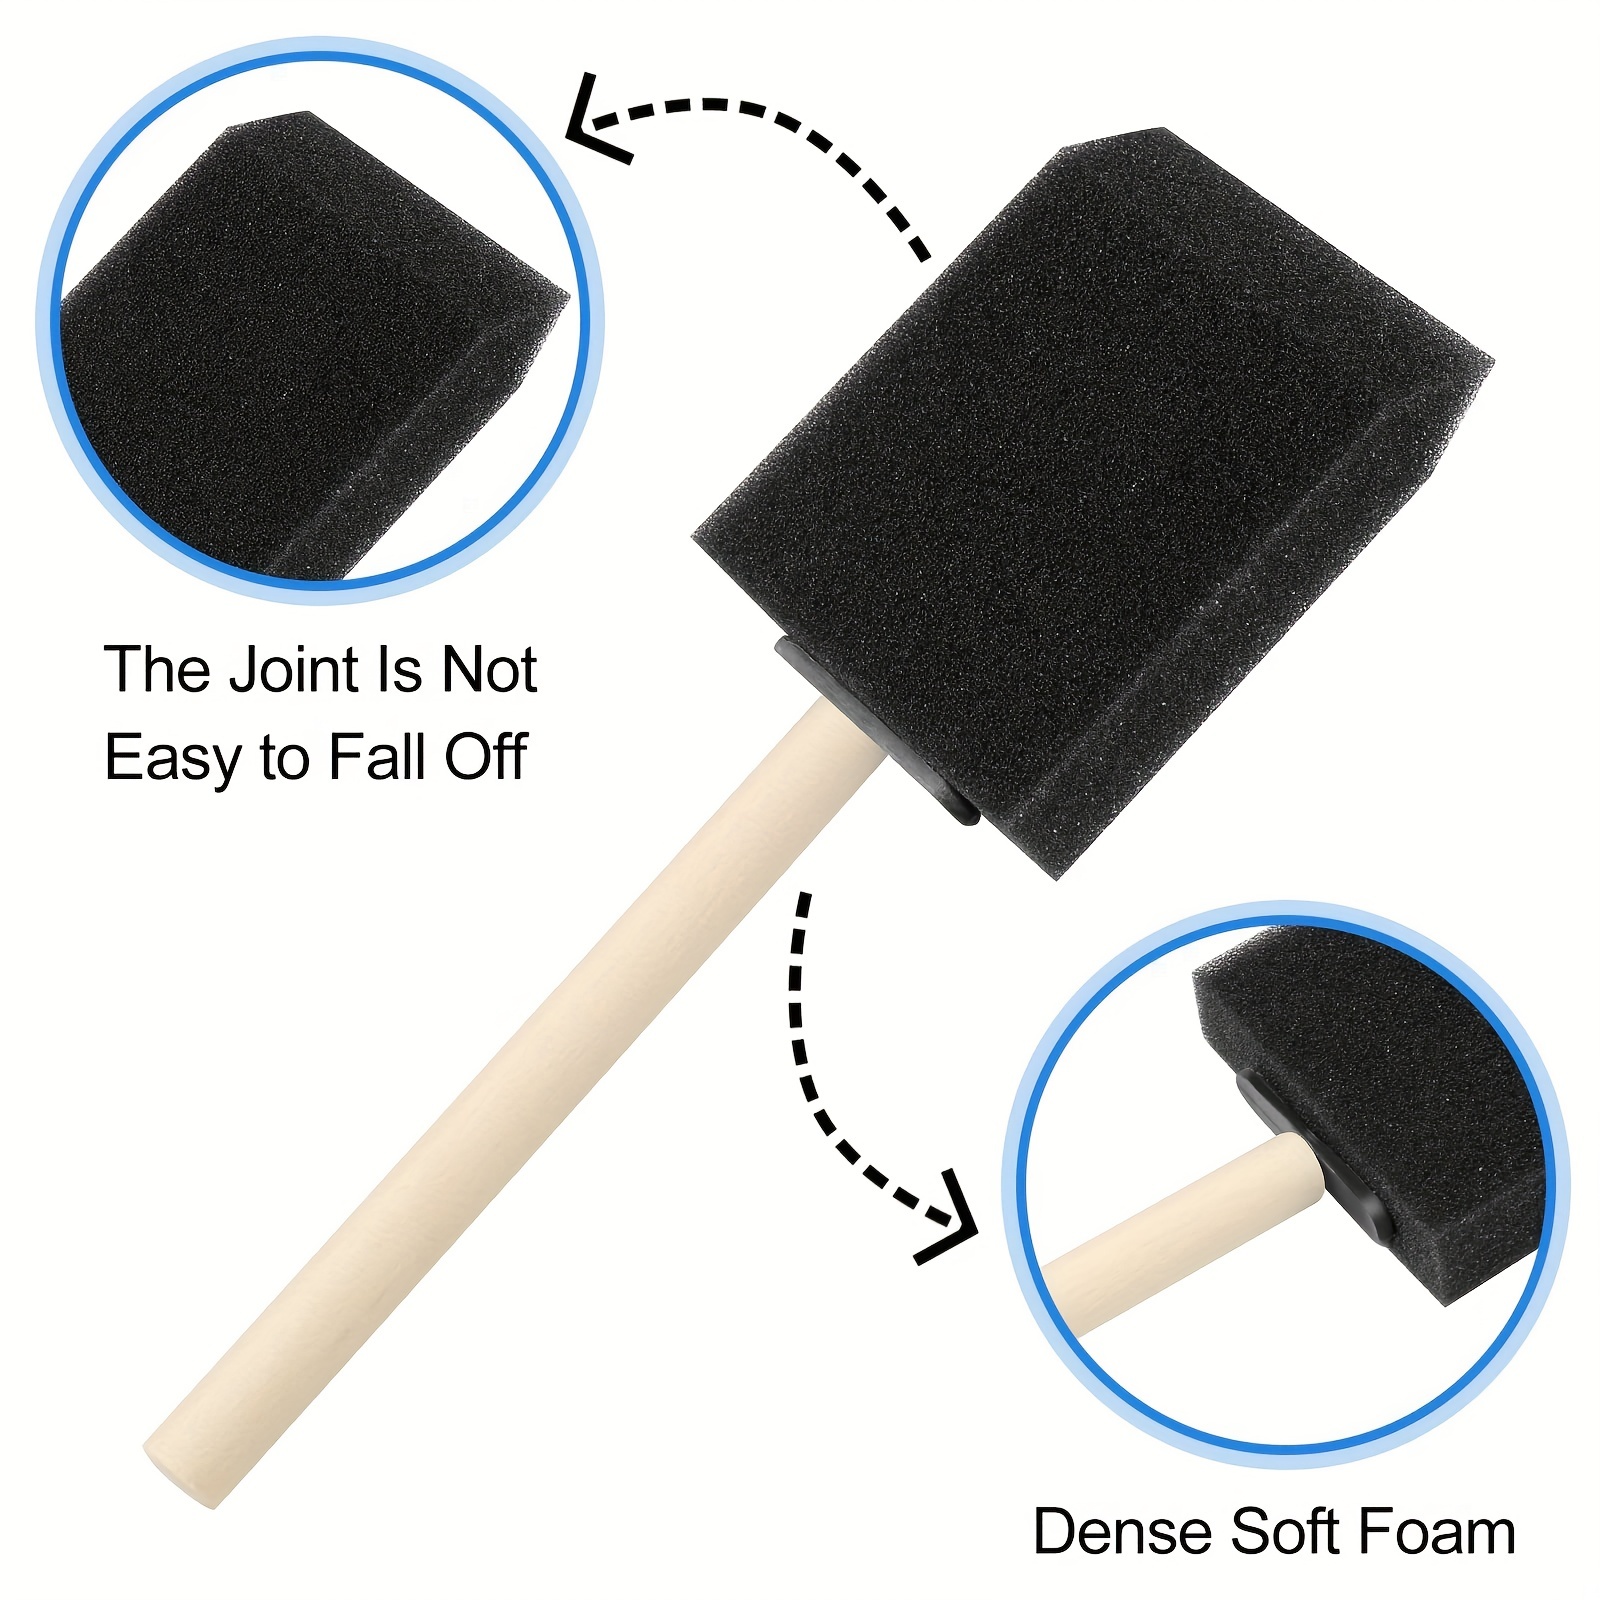 Foam Paint Brushes 4 Pcs Sponge Brushes Sponge Paint Brush with Wooden  Handle Foam Brushes for Painting Foam Brushes for Staining Paint Sponges Foam  Sponge Brush 